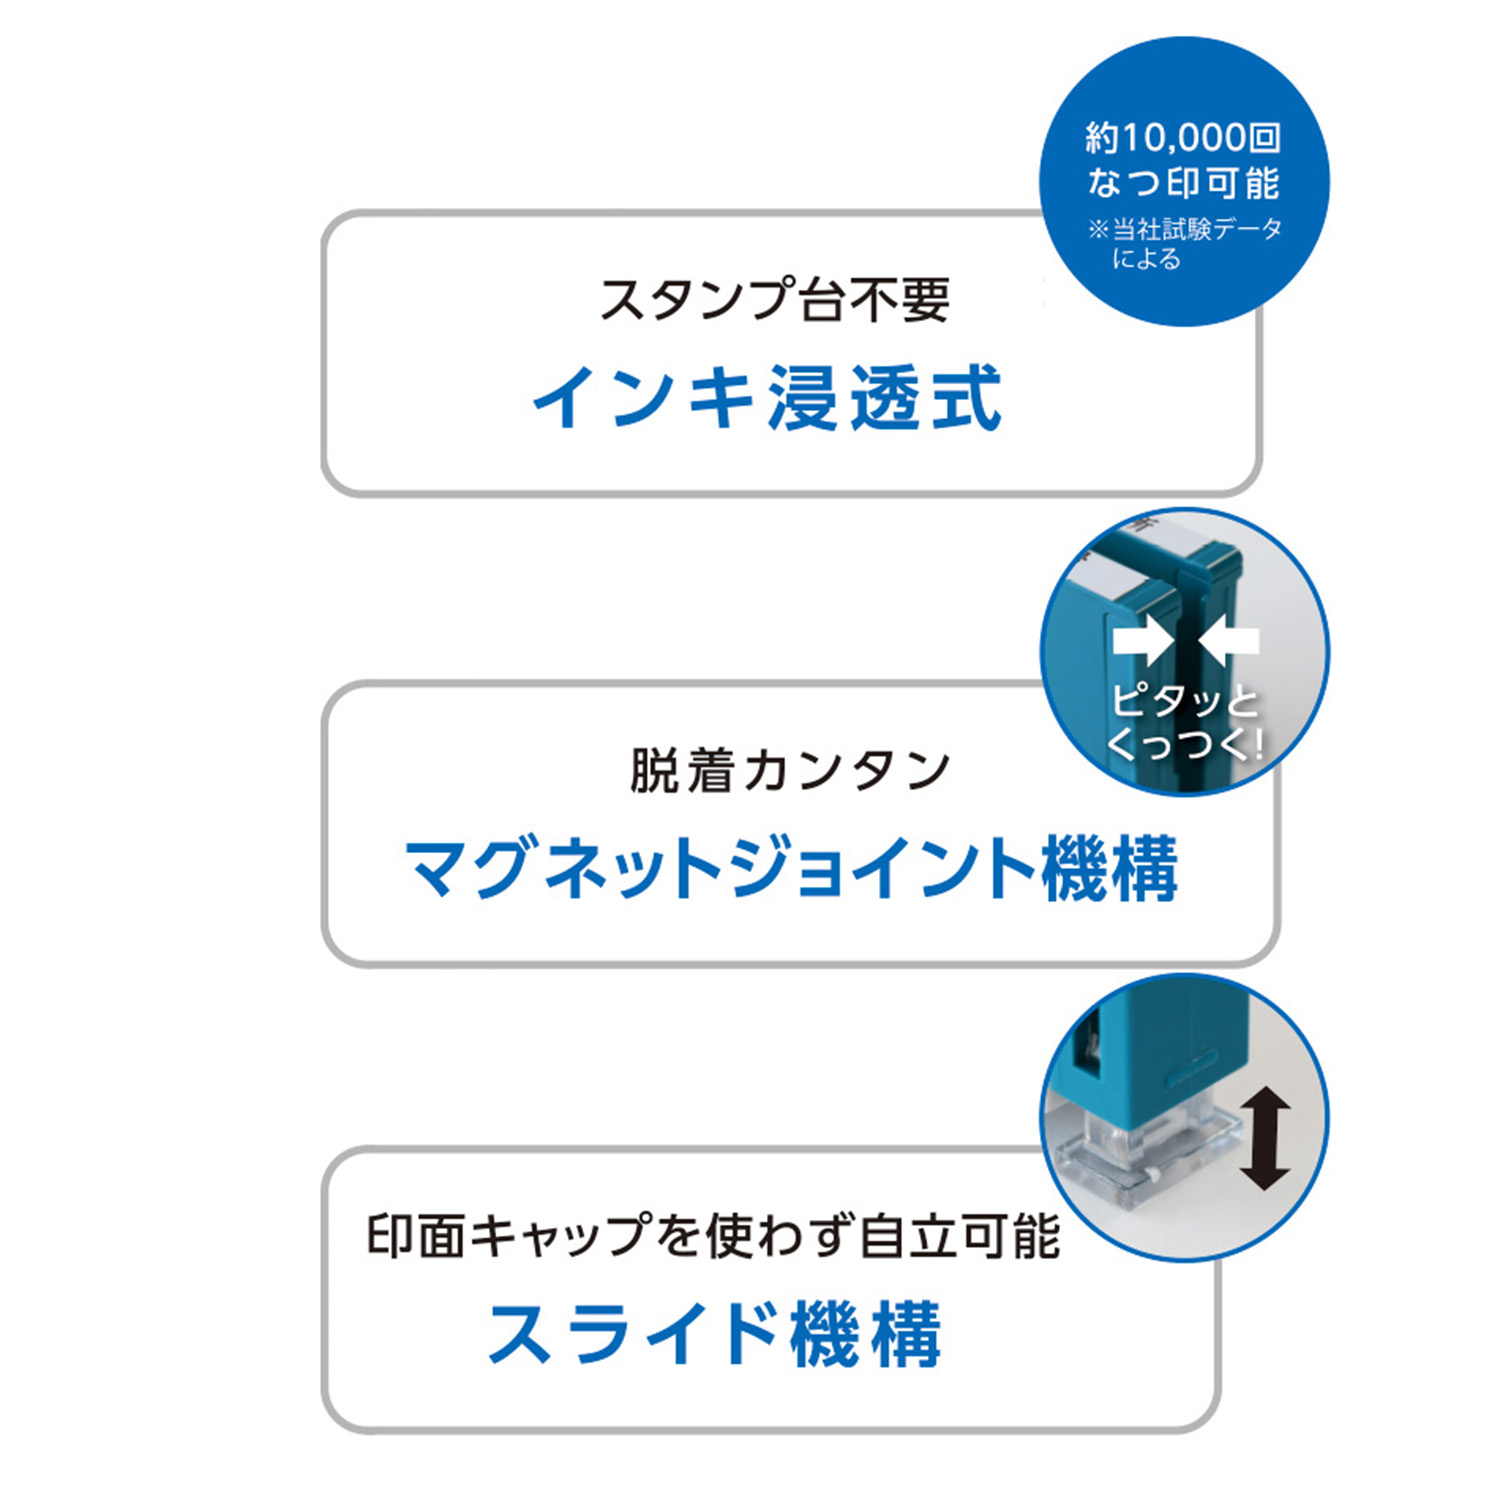 インボイス制度対応スタンプ・浸透印　一行印 (5×59mm) ヨコ「NET Asahi」